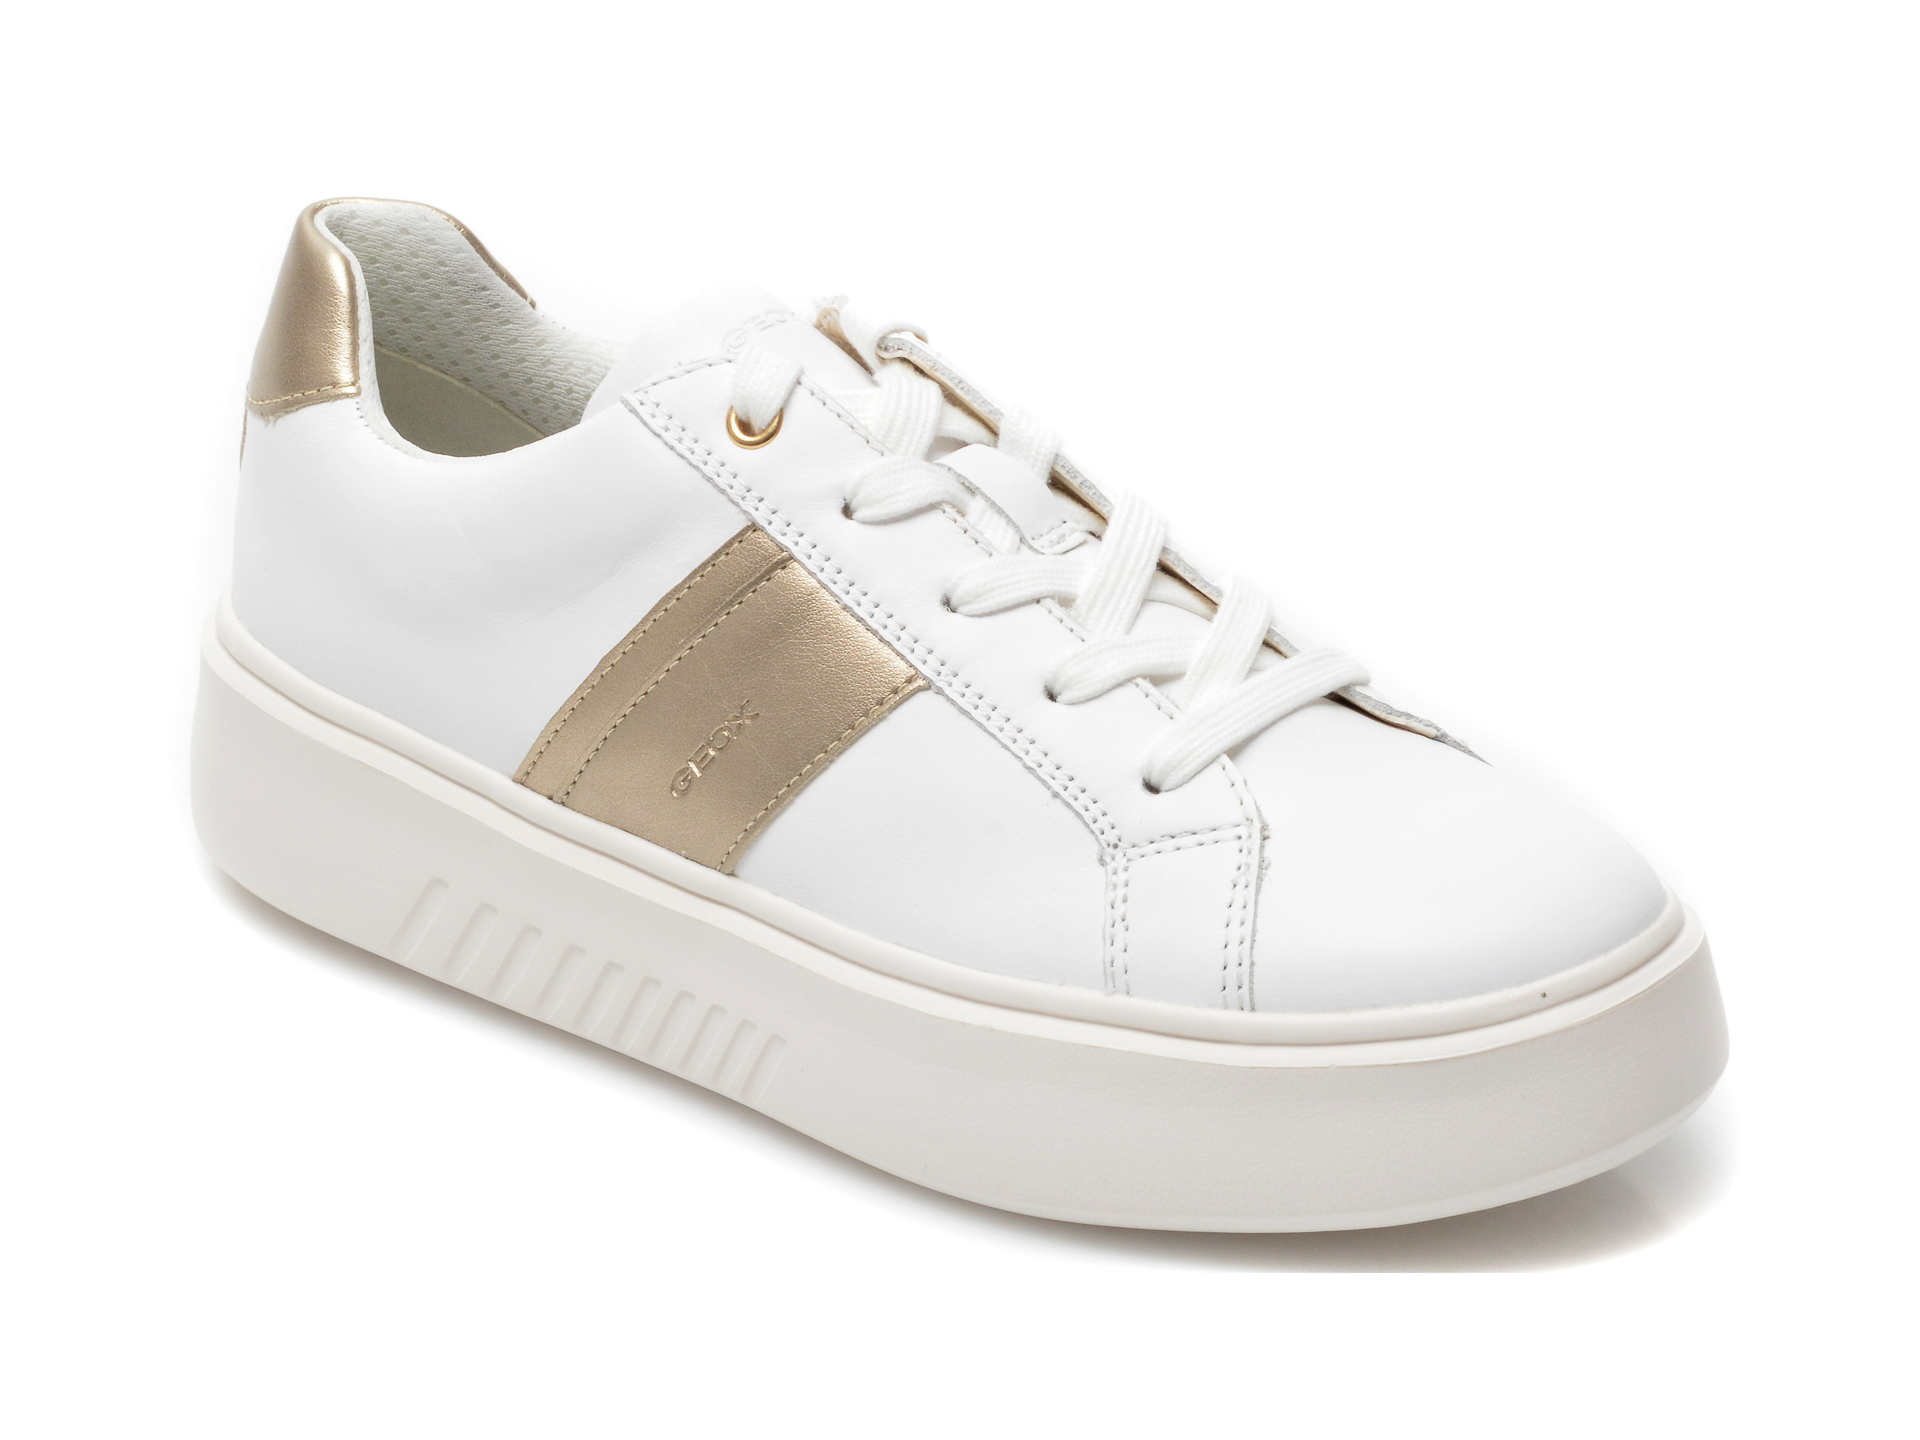 Pantofi sport GEOX albi, D158DB, din piele naturala Geox Geox